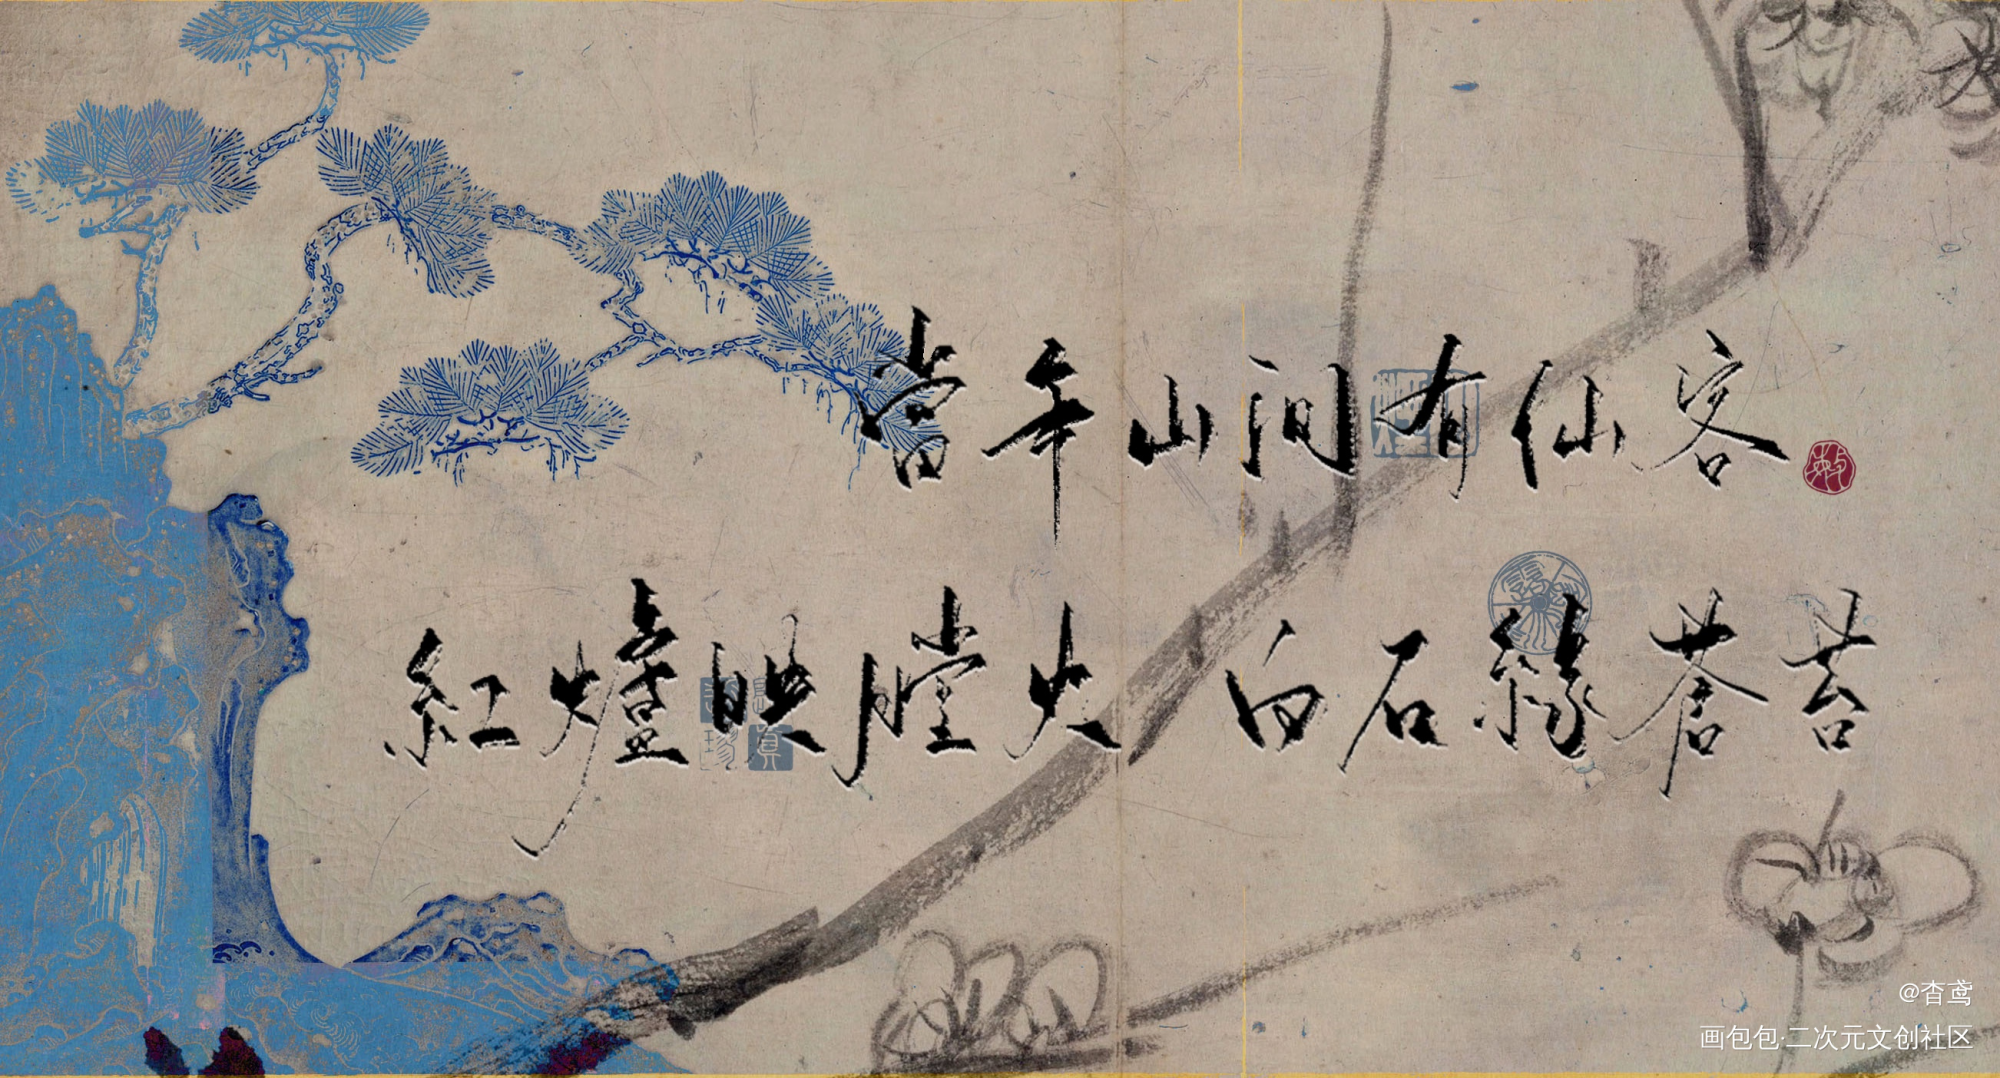 【判官】系列9/9_木苏里判官我要上首推字体设计见字如晤手写绘画作品